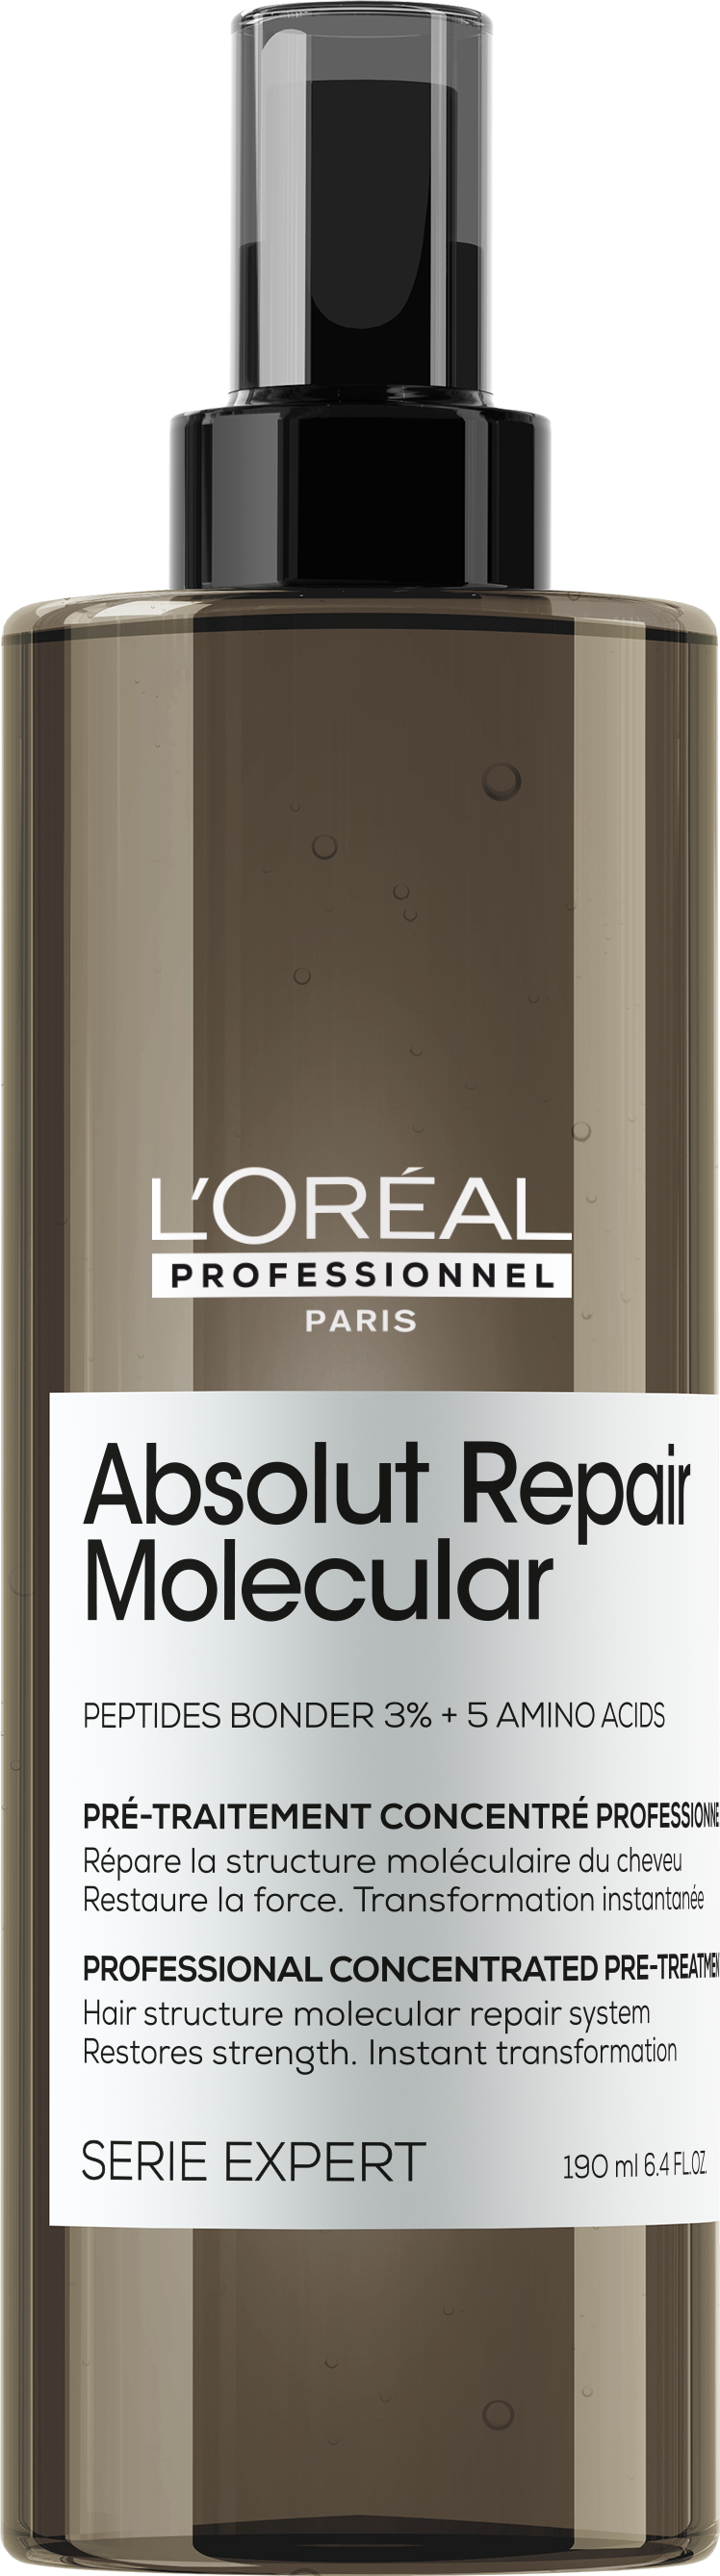 Absolut Repair Molecular Pre-treatment (€42,00)